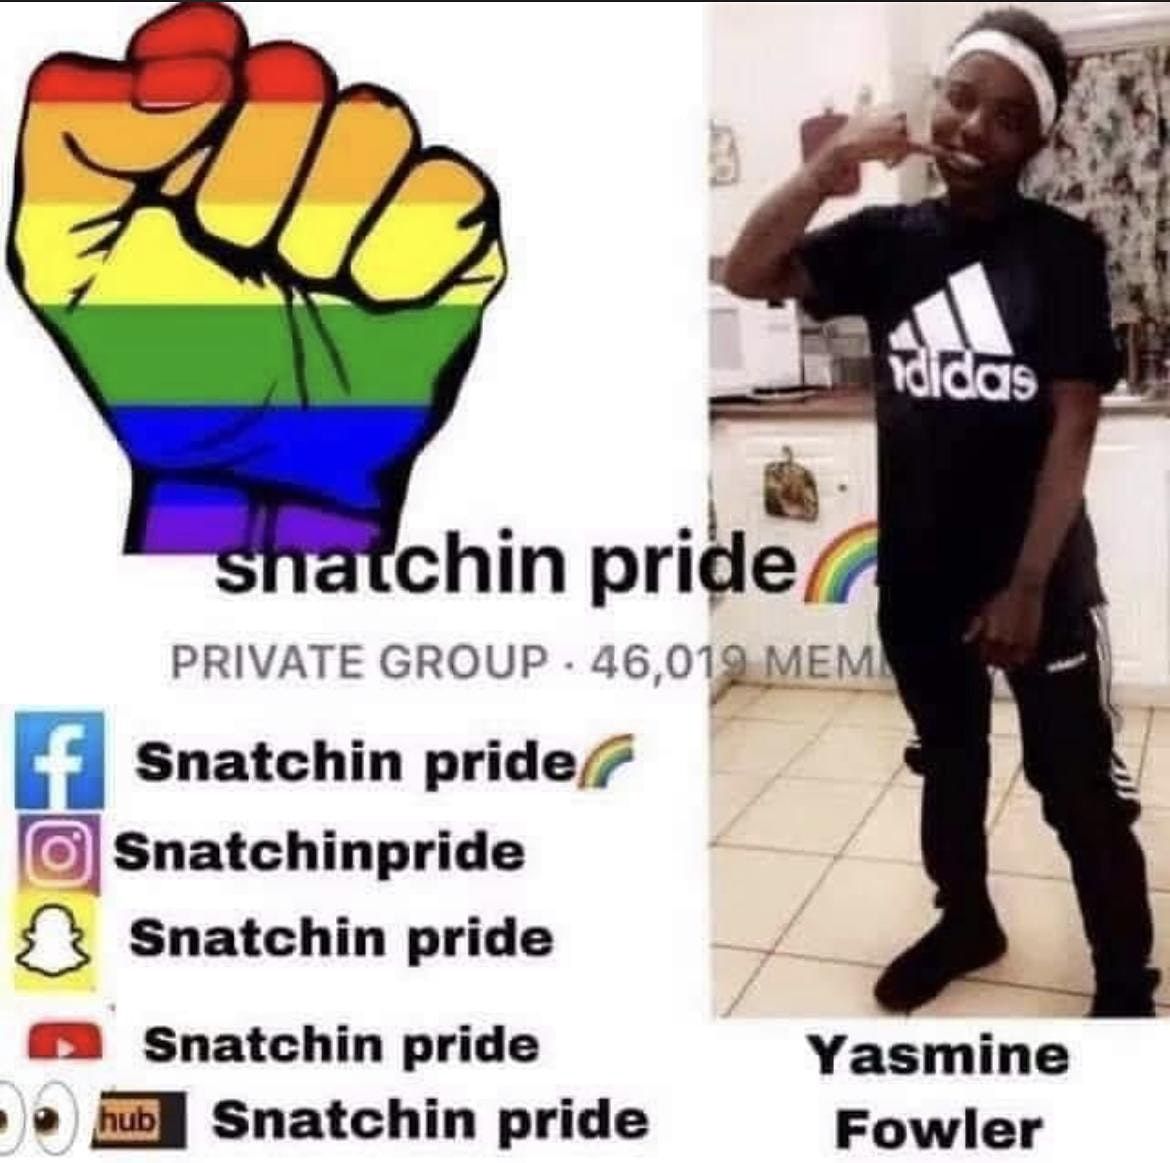 Snatchin pride members meet in Vegas